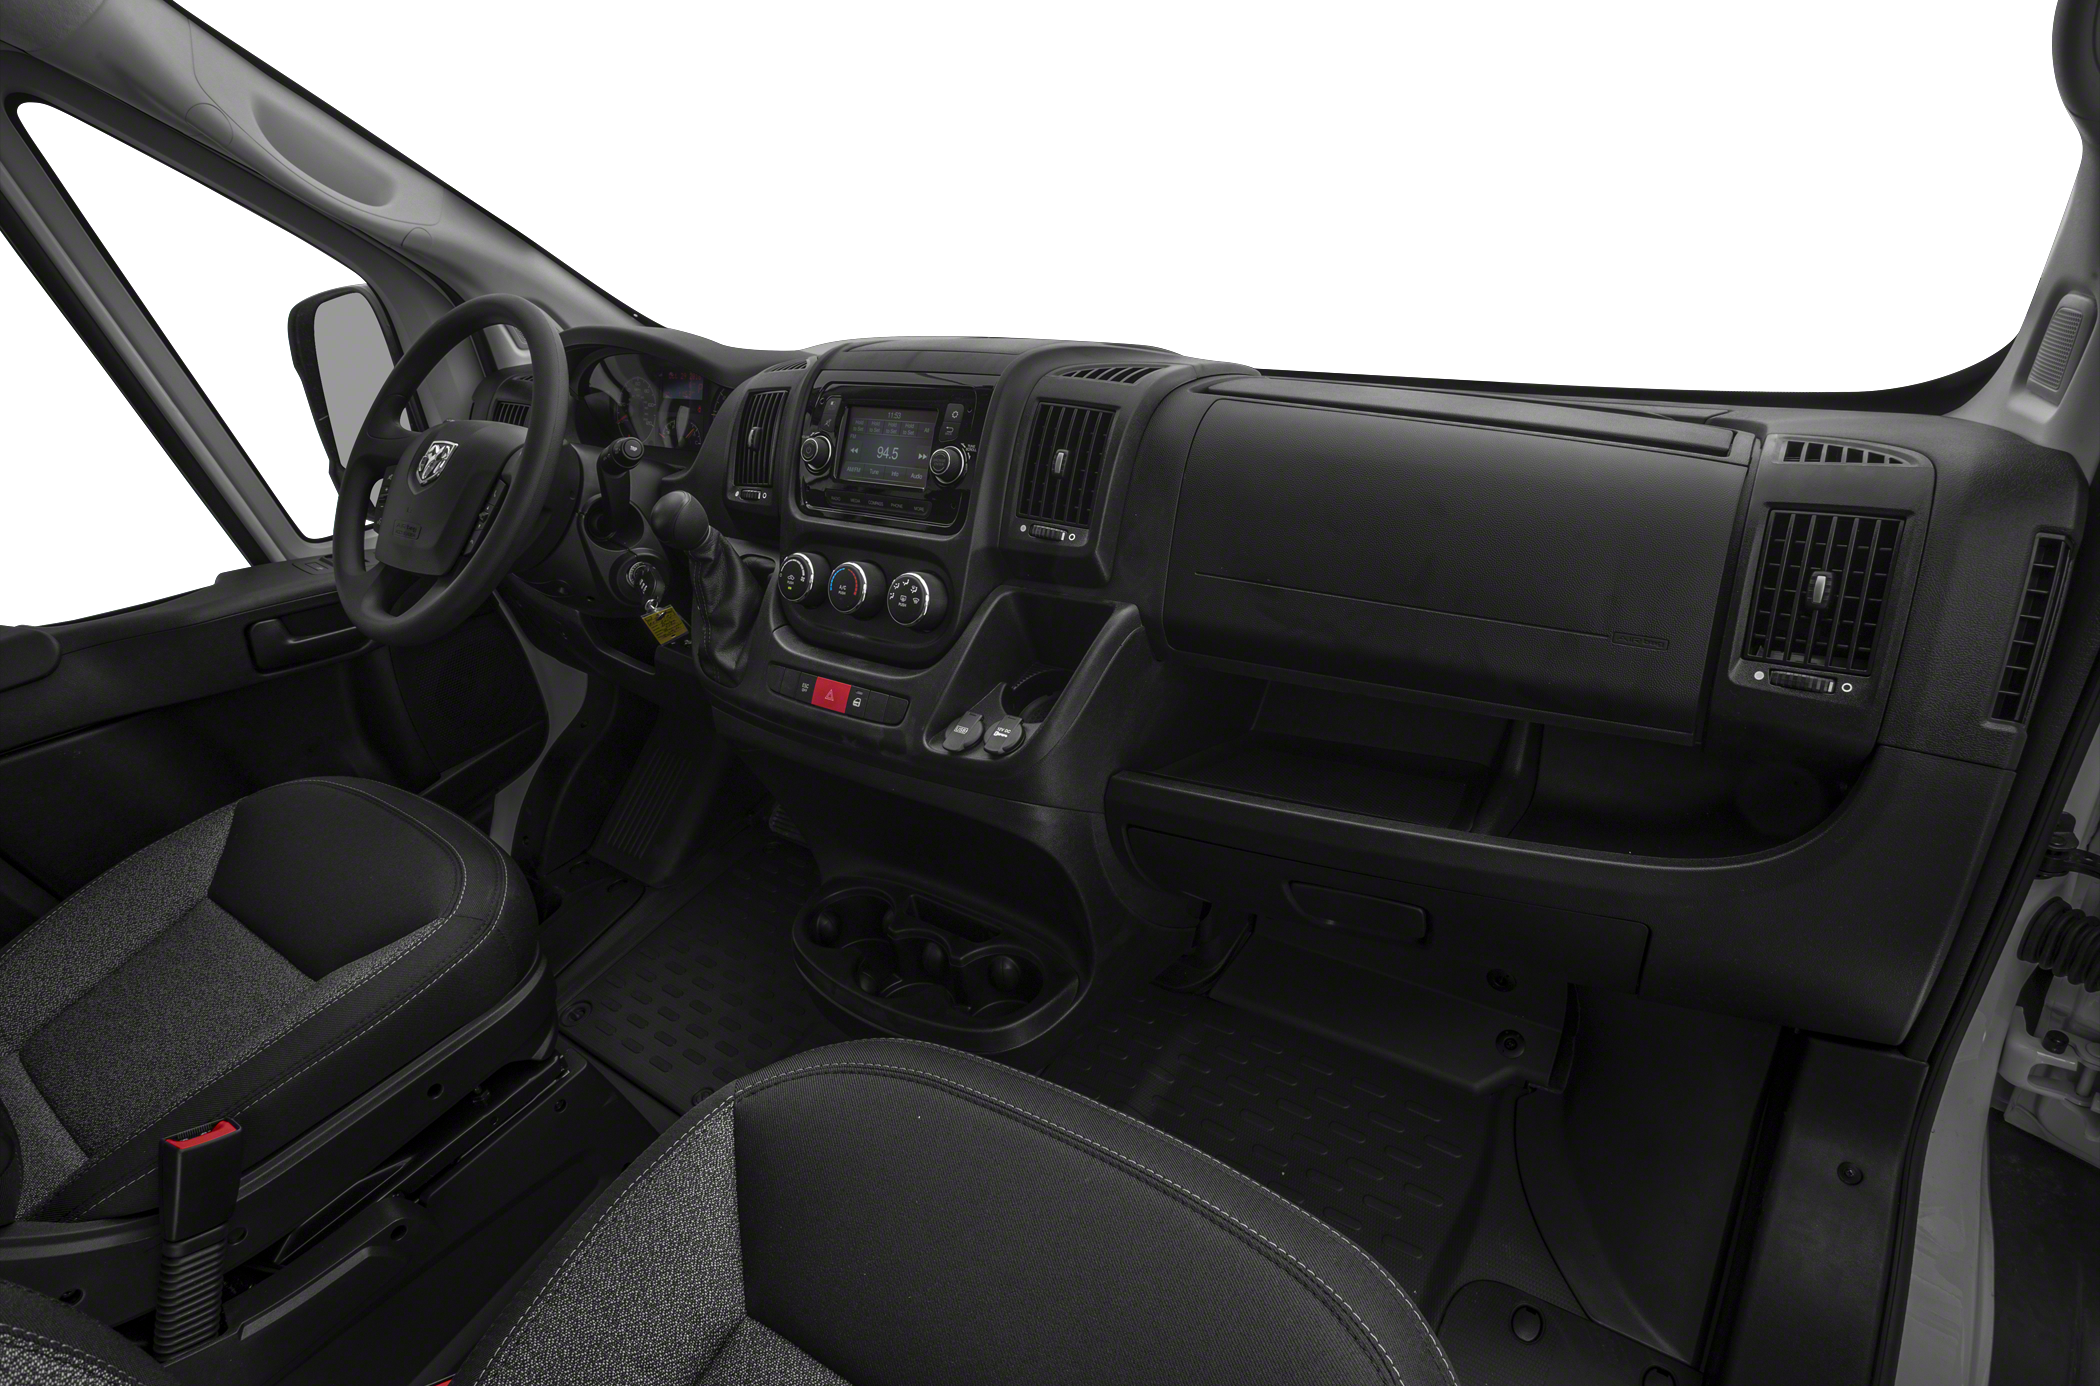 2021 RAM ProMaster 2500 Window Van